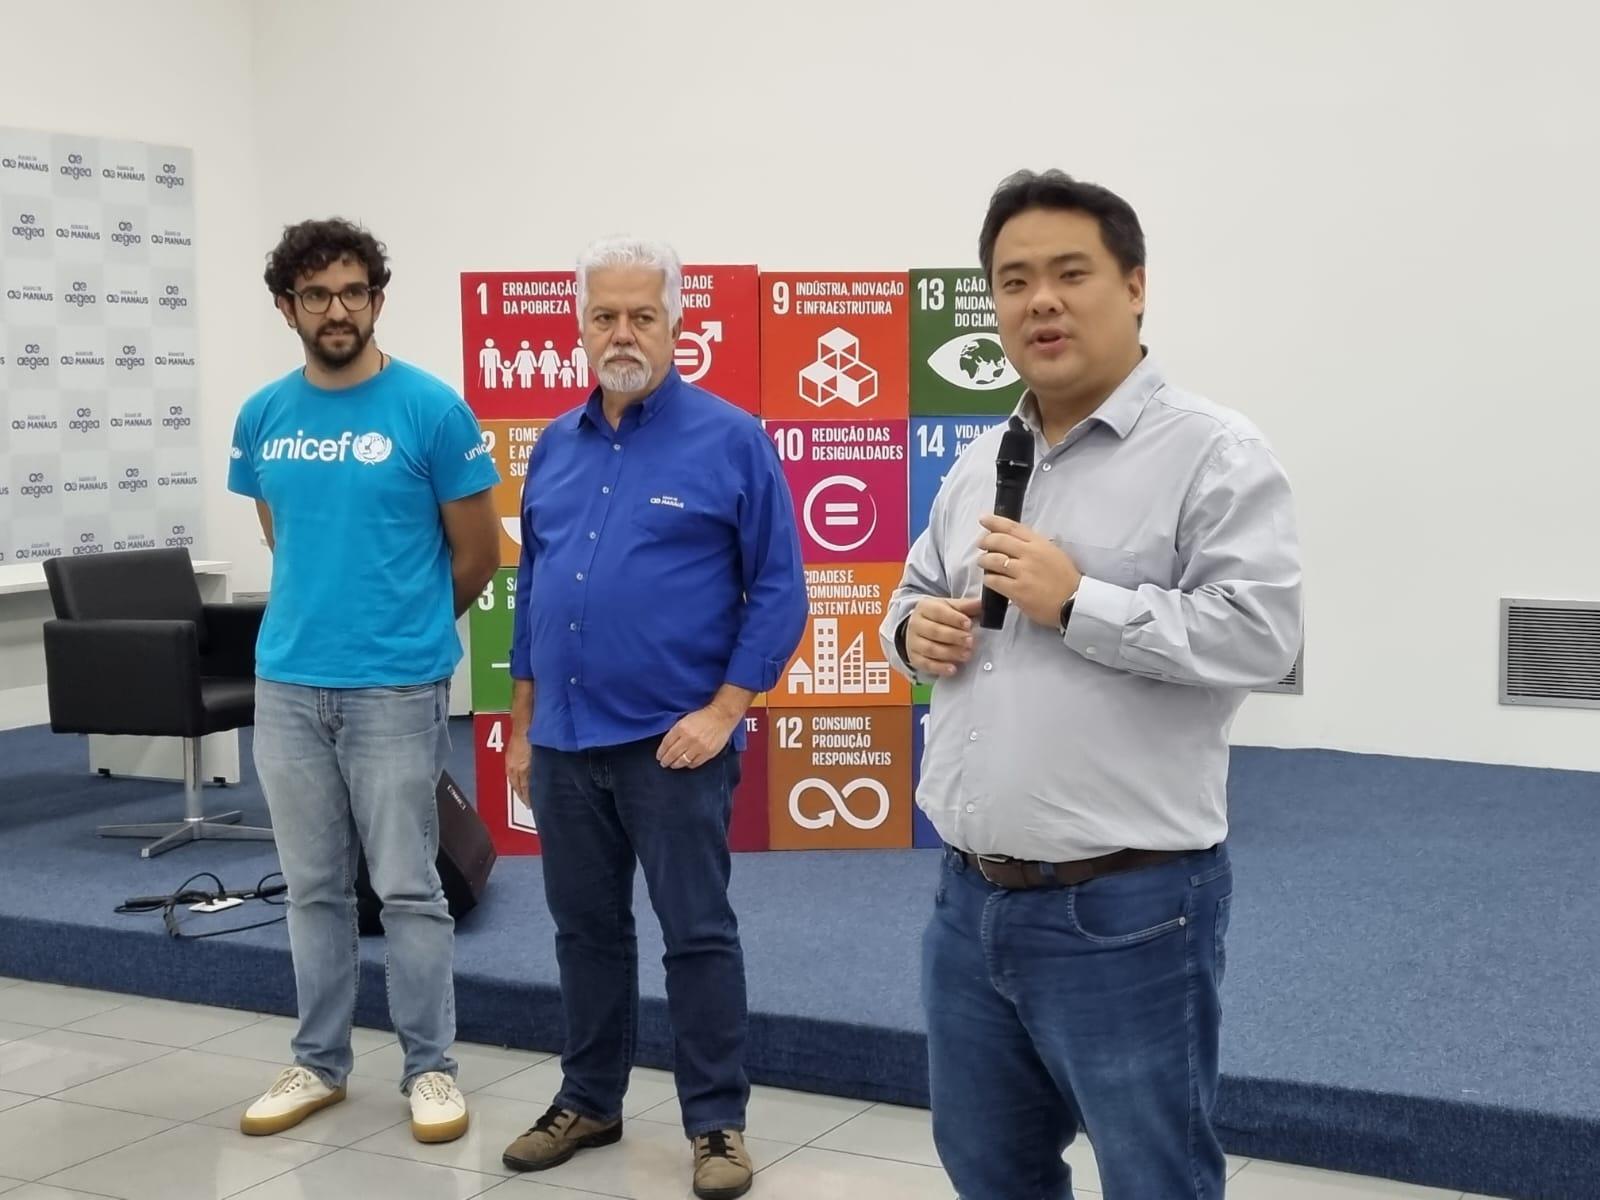 Águas de Manaus e UNICEF abrem inscrições para ‘hackathon’ de soluções para o saneamento básico na capital